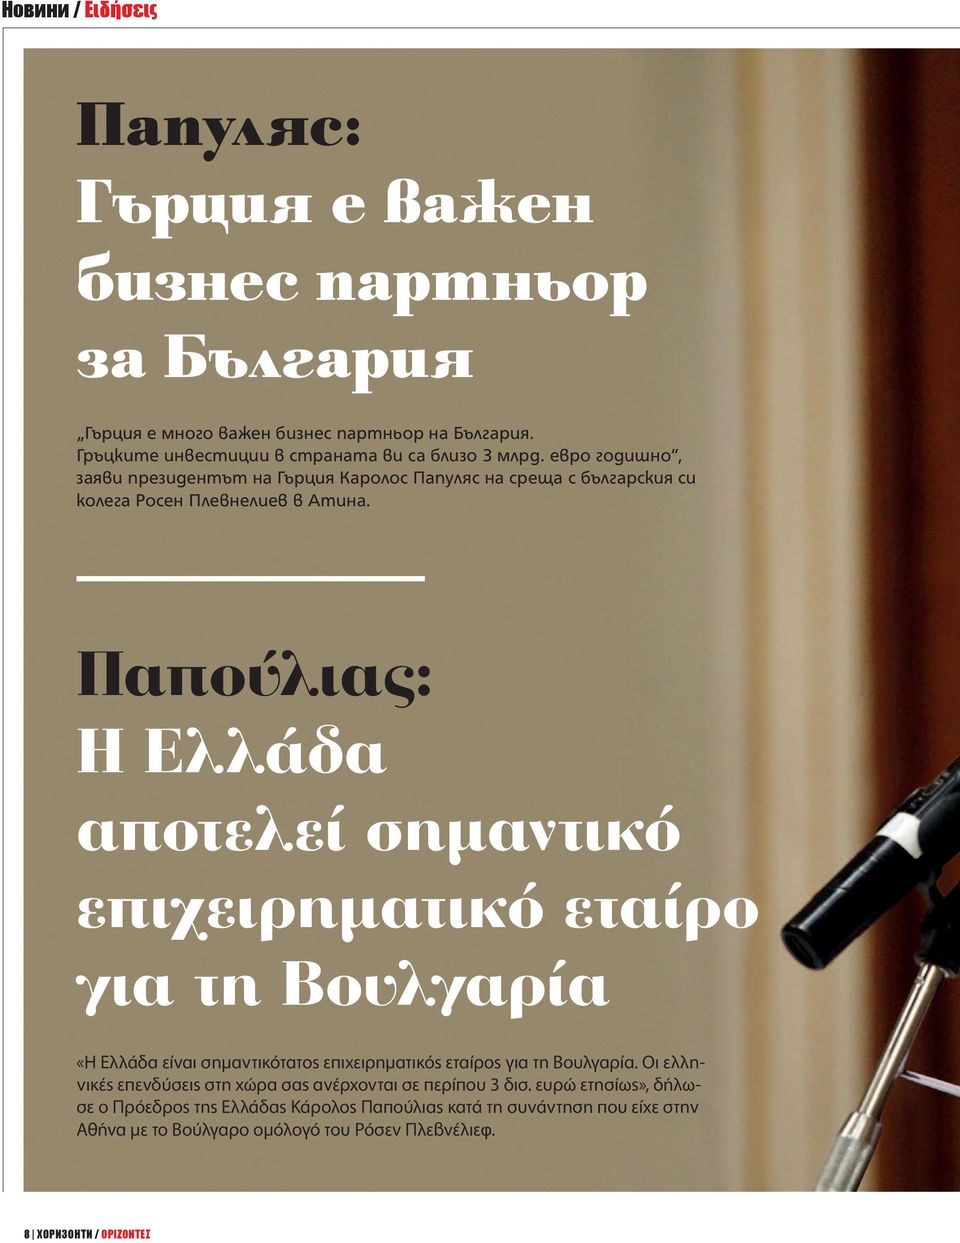 Παπούλιας: Η Ελλάδα αποτελεί σημαντικό επιχειρηματικό εταίρο για τη Βουλγαρία «Η Ελλάδα είναι σημαντικότατος επιχειρηματικός εταίρος για τη Βουλγαρία.